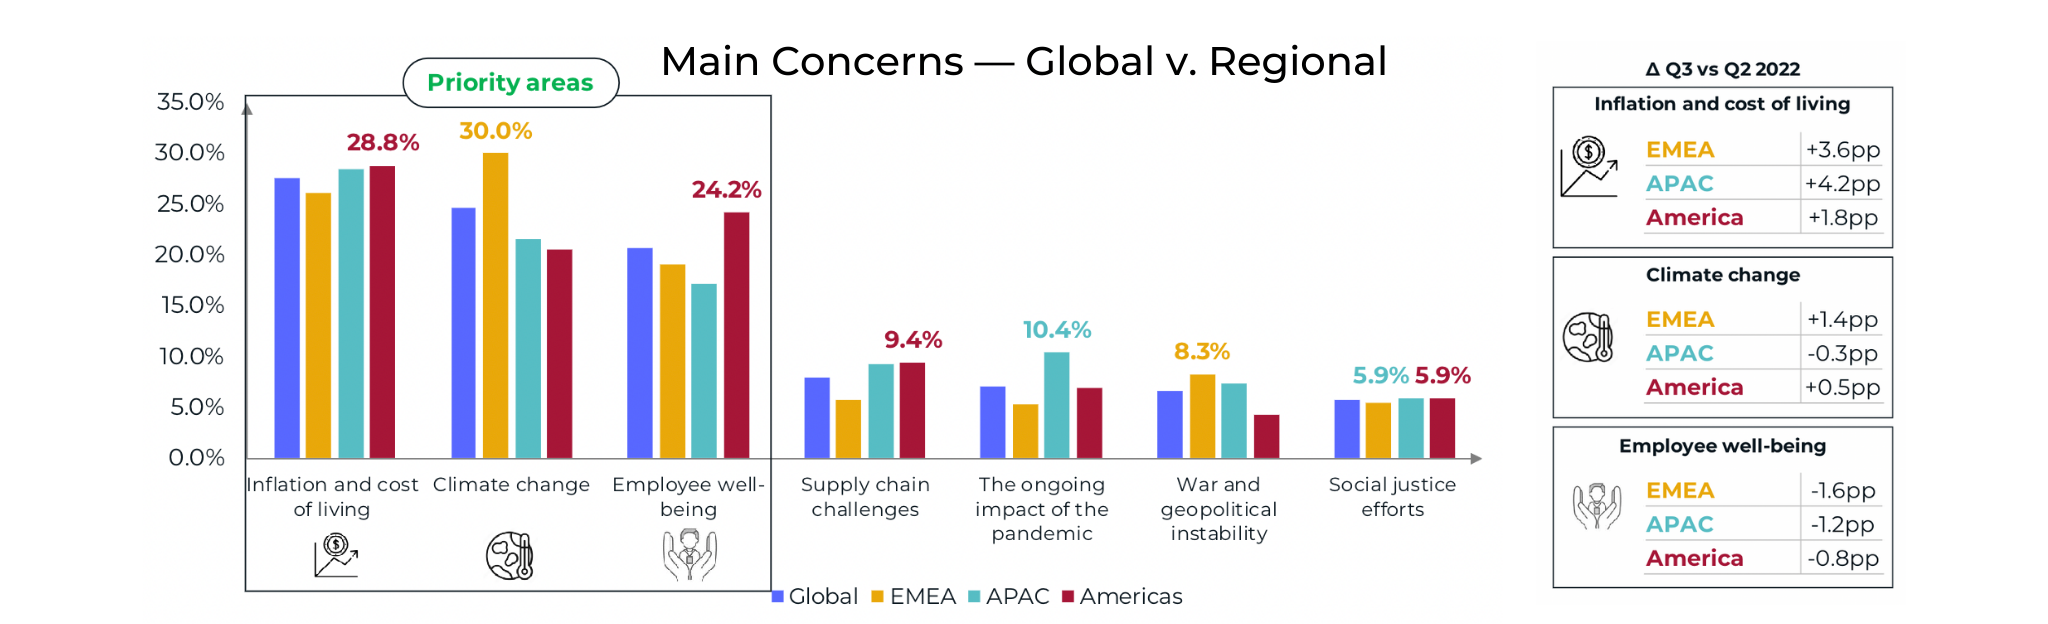 Main Concerns - Global v Regional